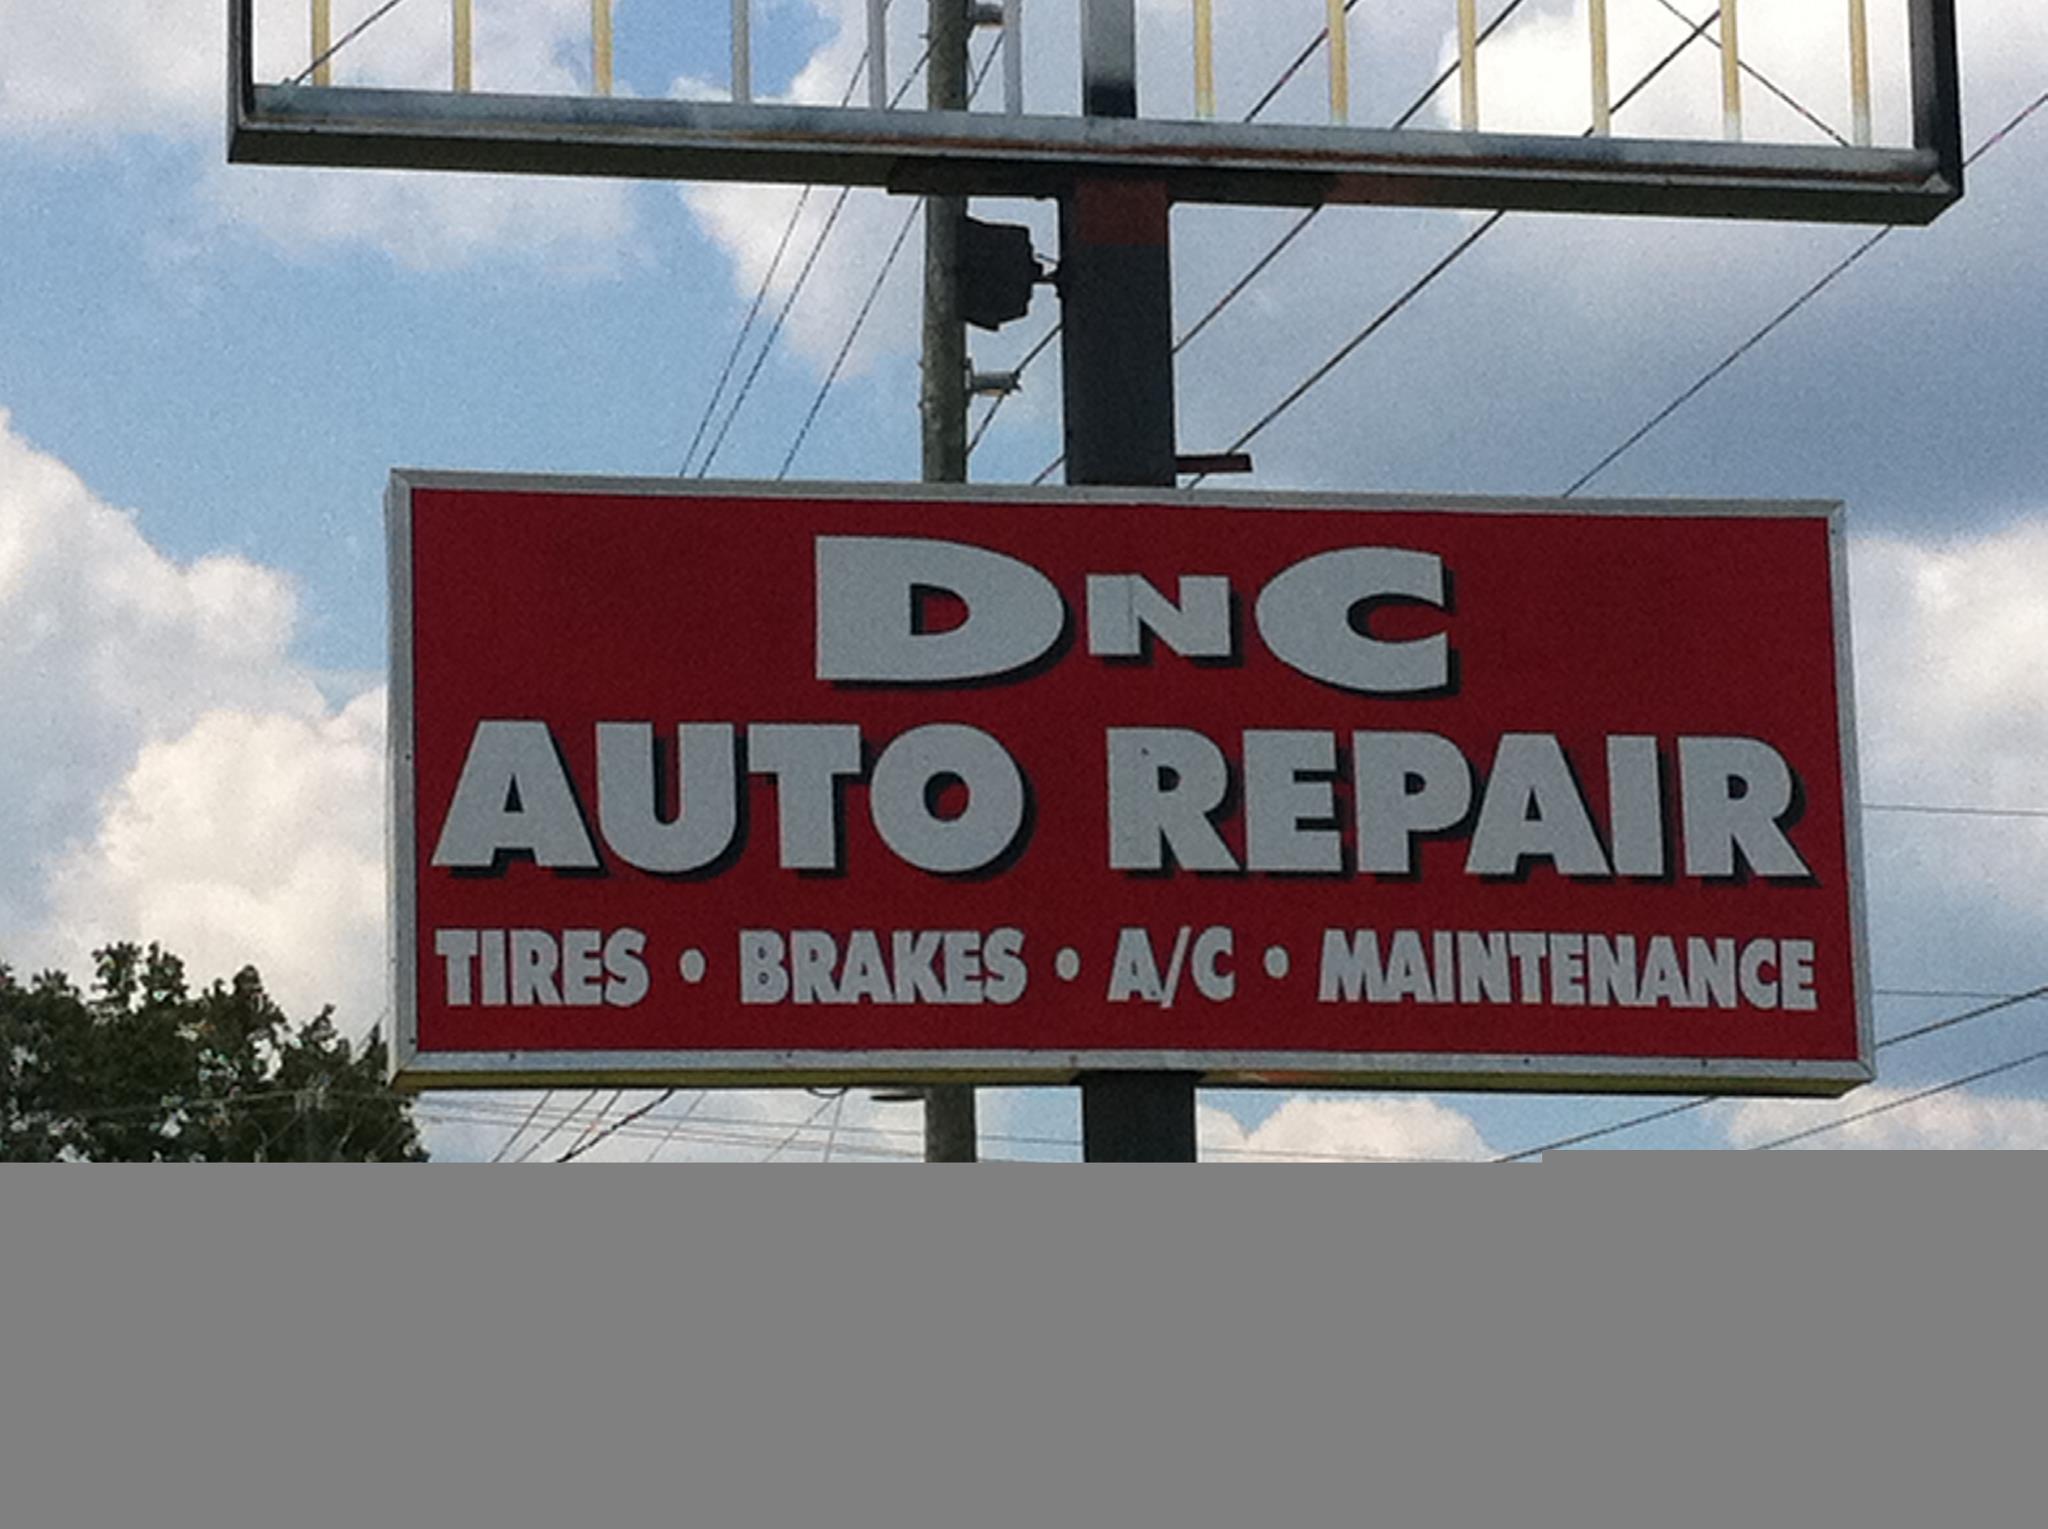 DnC Auto Repair